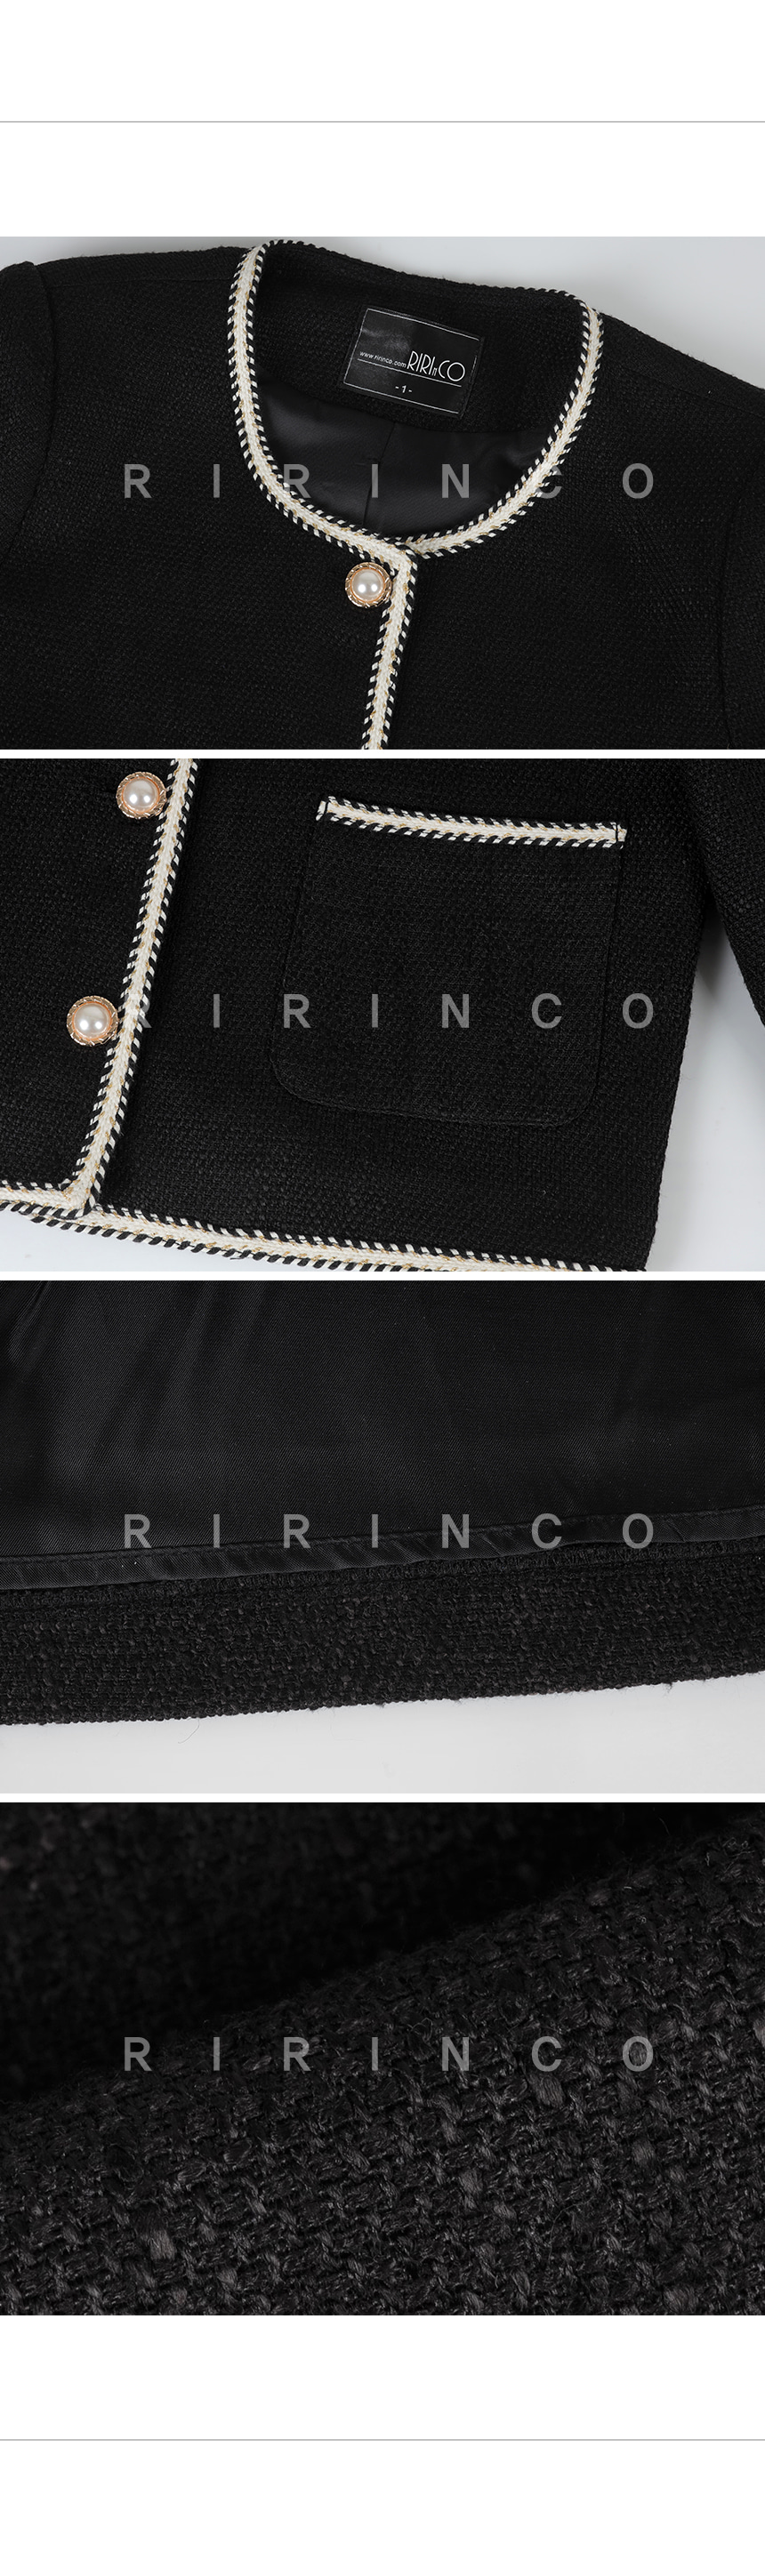 RIRINCO ツーピースツイードノーカラージャケット